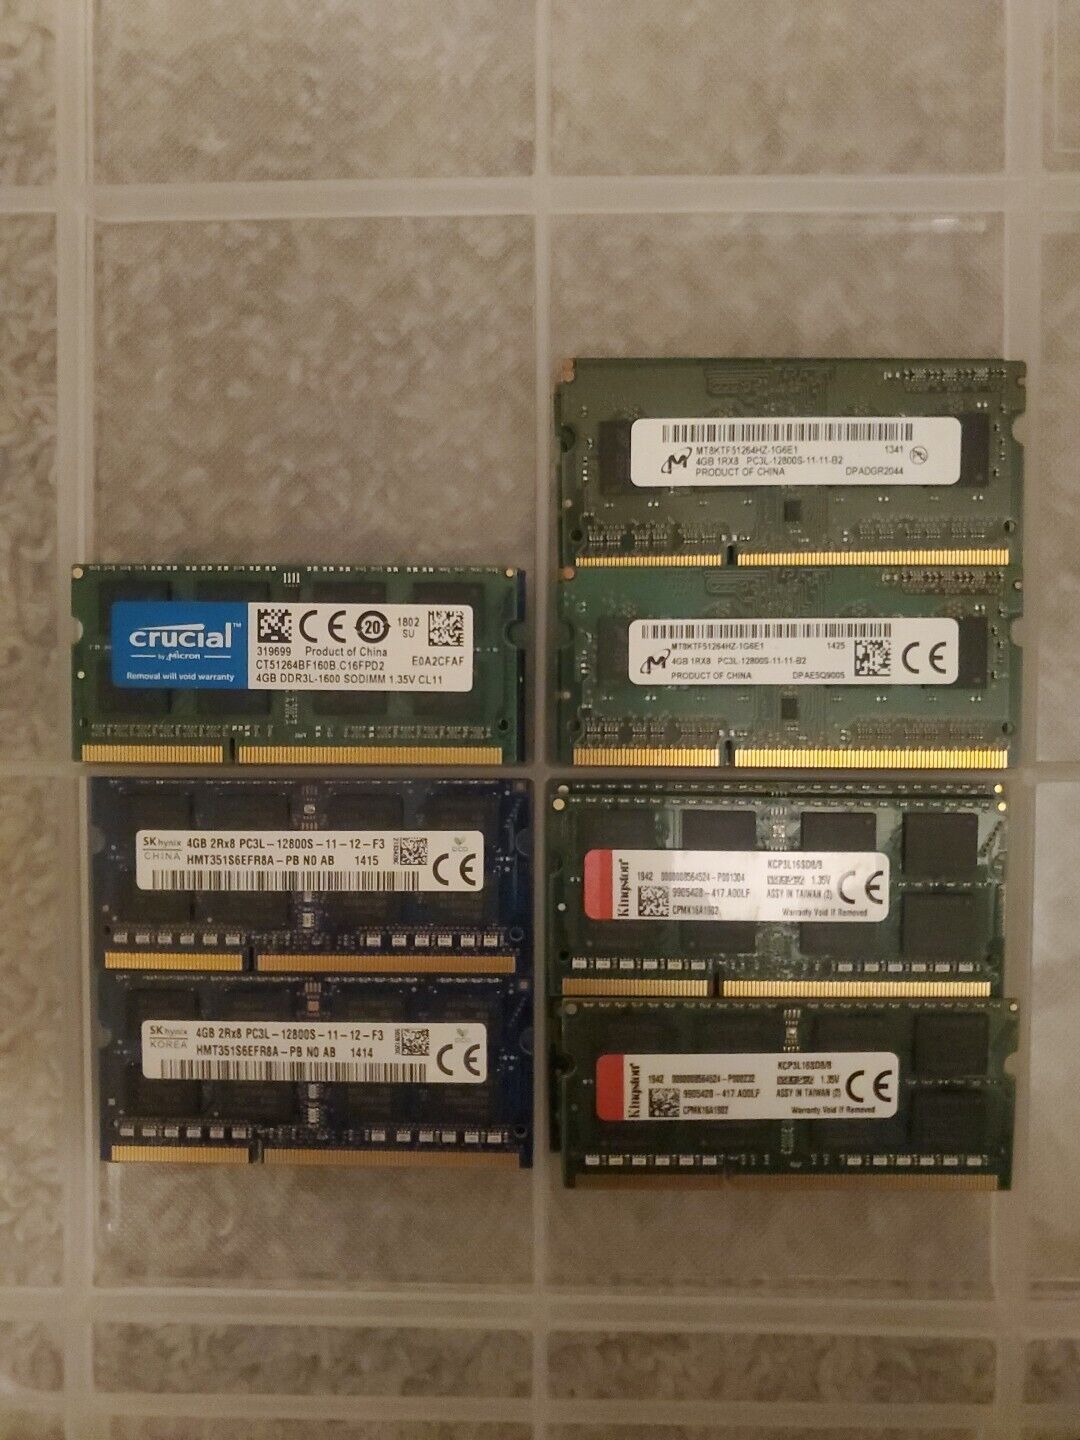 Mixed Lot of 16 x 4GB/8GB RAM Sticks